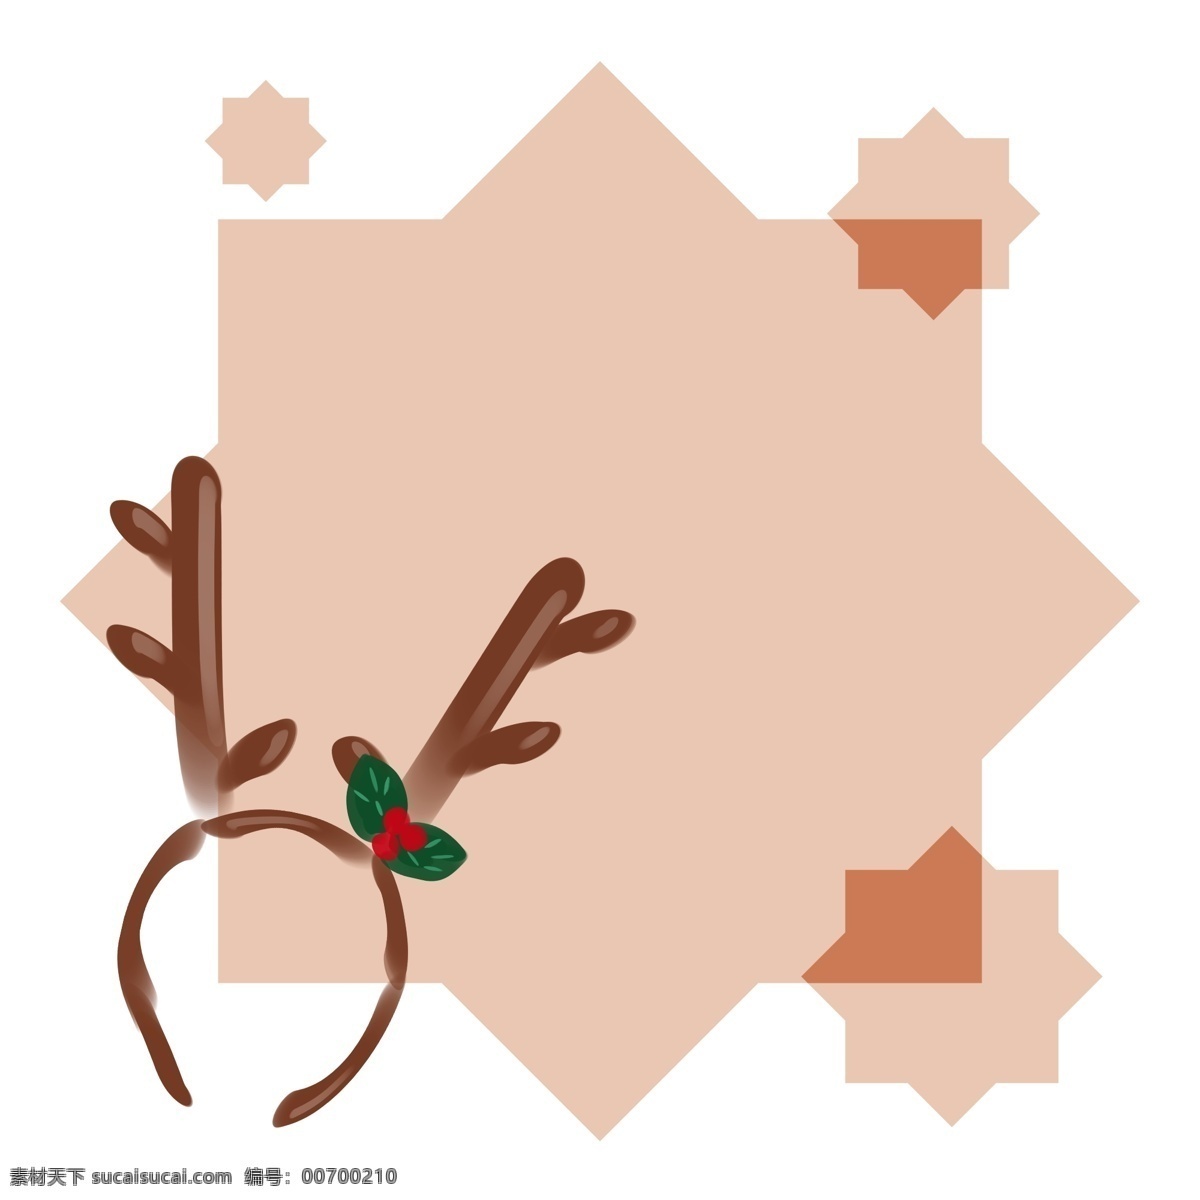 圣诞节 麋鹿 边框 插画 手绘 黄色的麋鹿 漂亮的边框 边框装饰 边框插画 可爱的边框